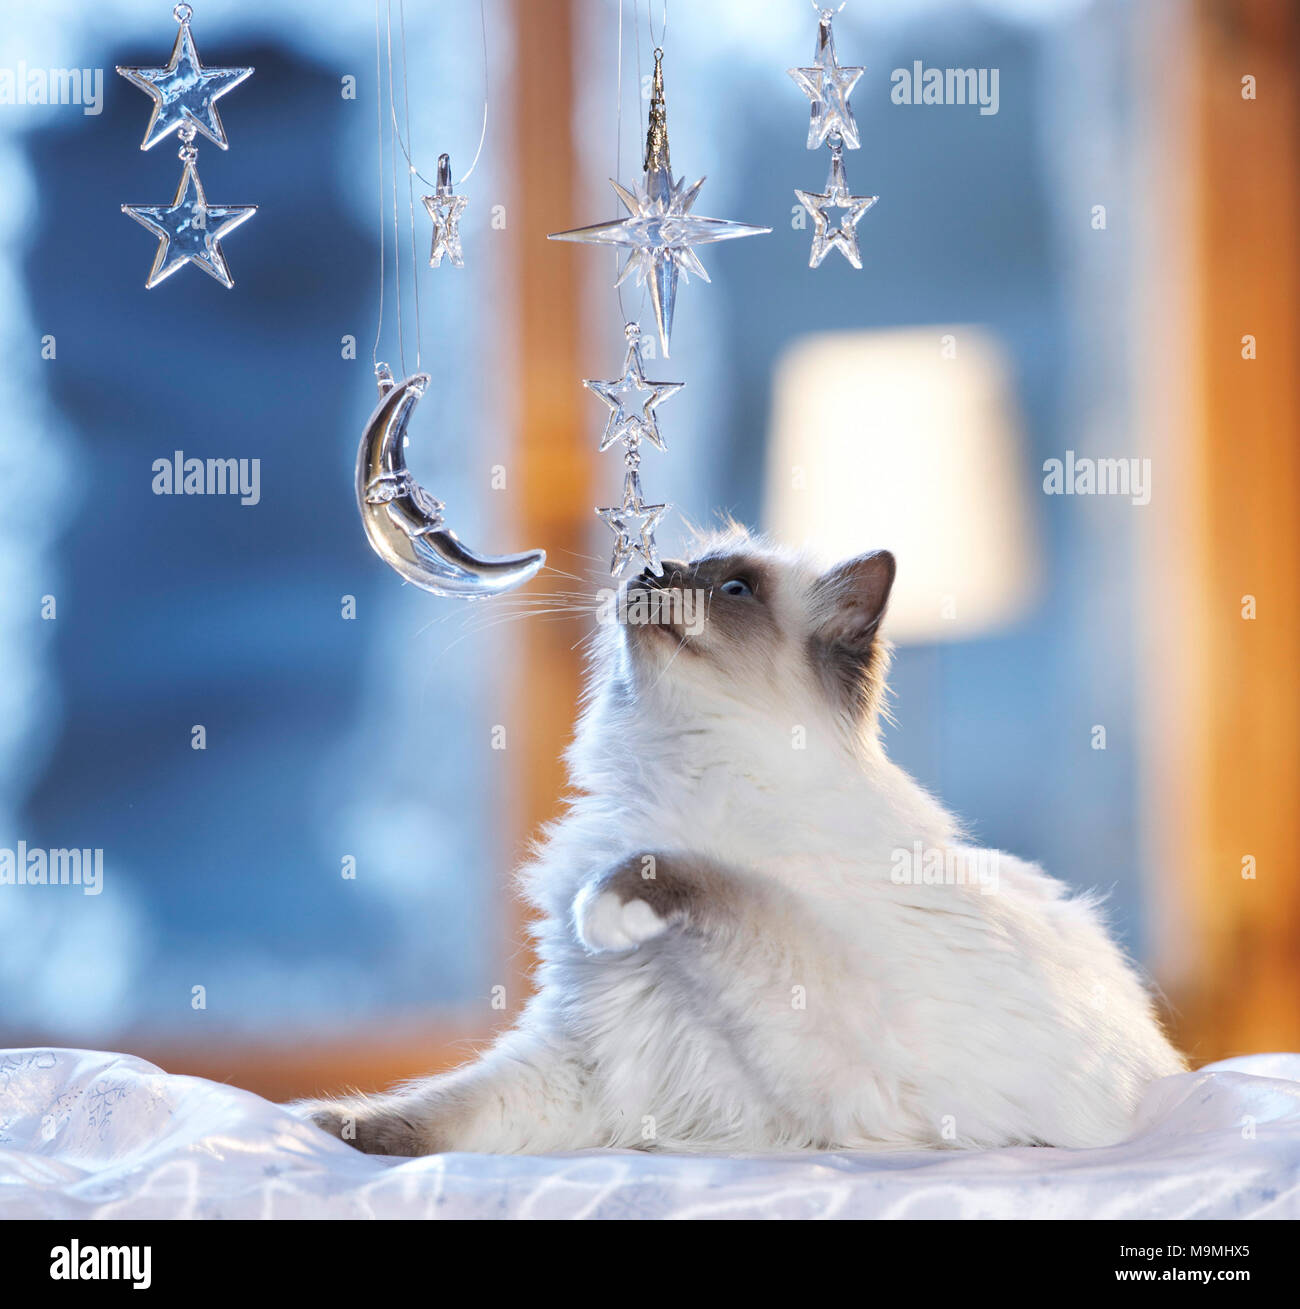 Natale: gatto Sacri di Birmania giocando con la luna e le stelle fatte di vetro in una festosa decorati finestra. Germania Foto Stock